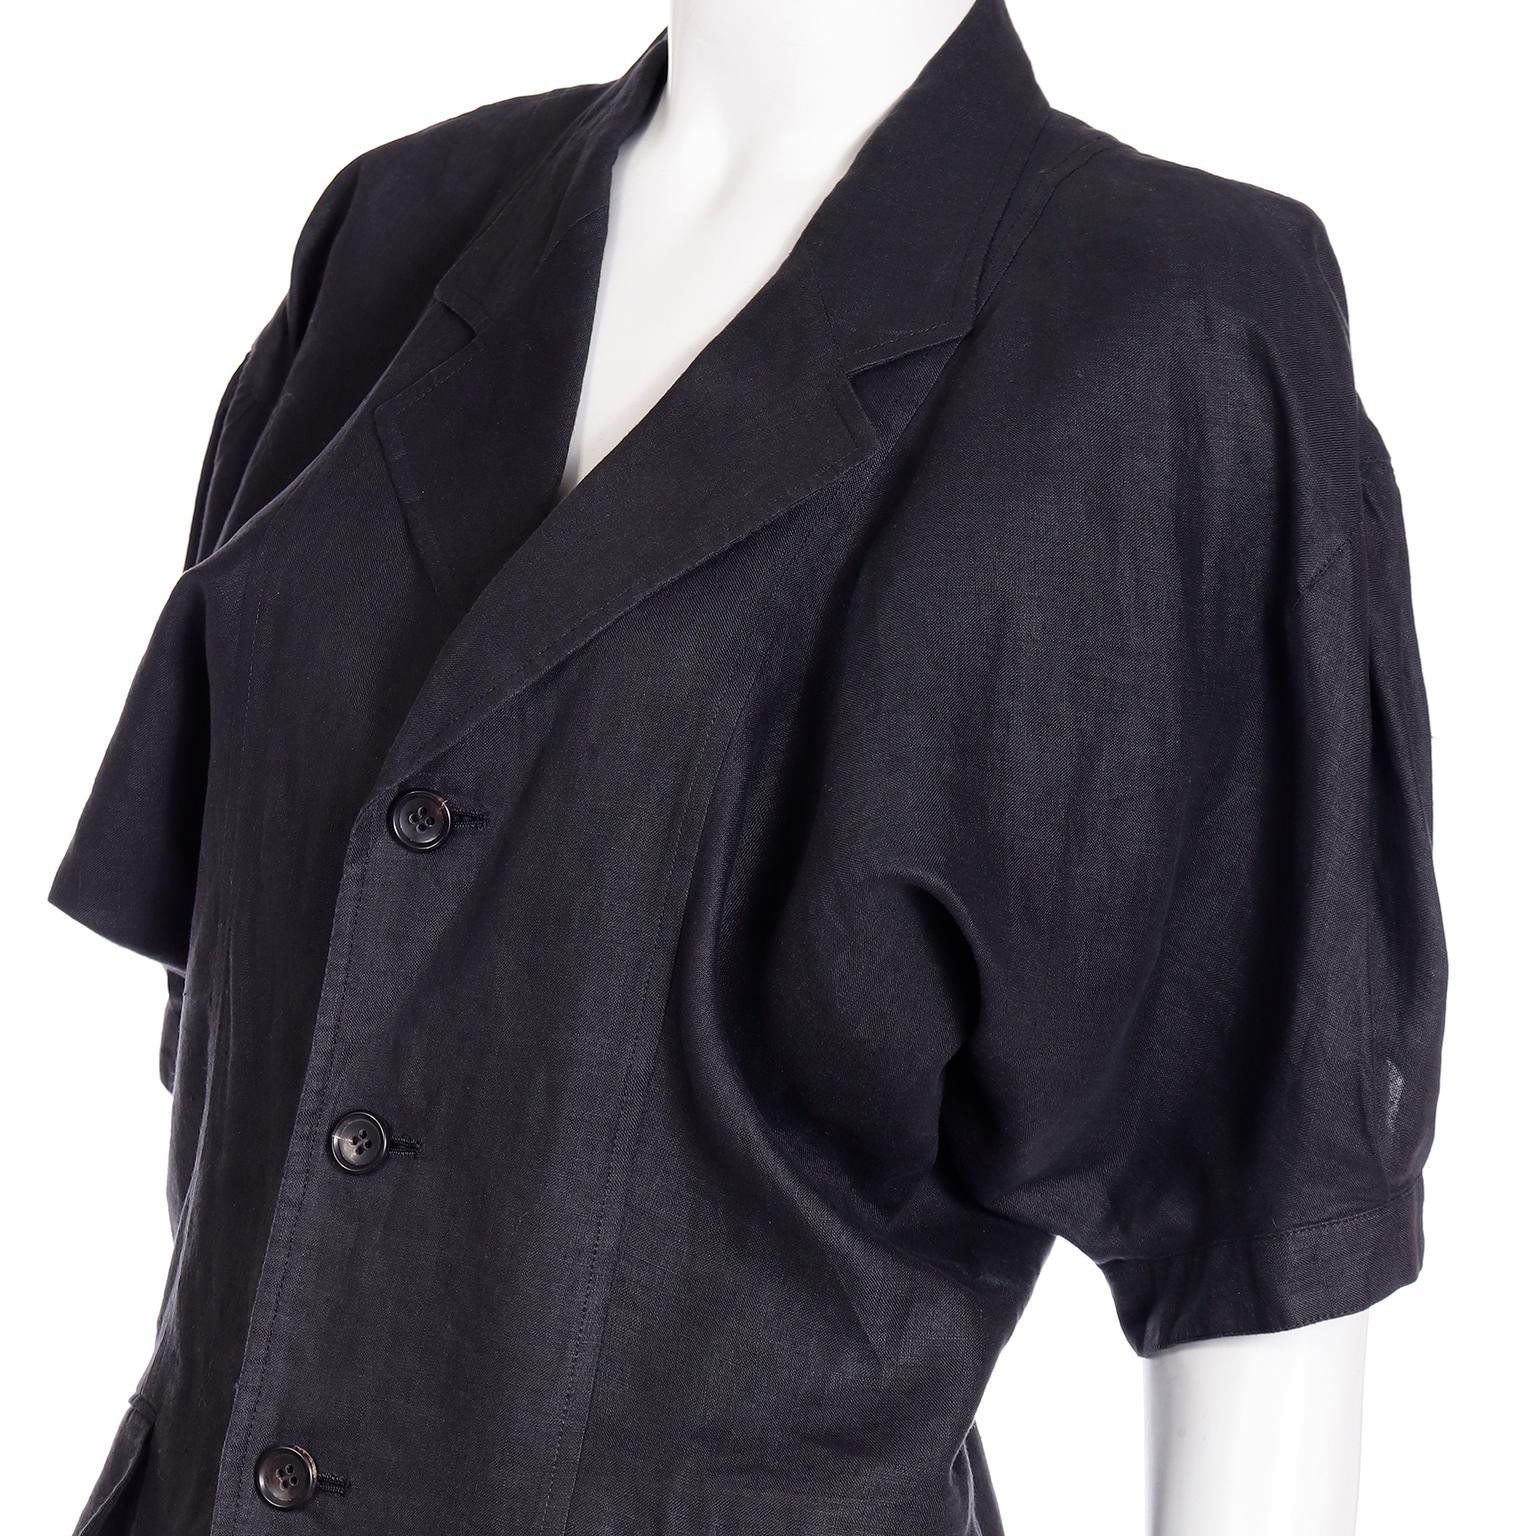 Comme des Garcons S/S 1989 Vintage Black Linen Jacket & Pants Outfit For Sale 10